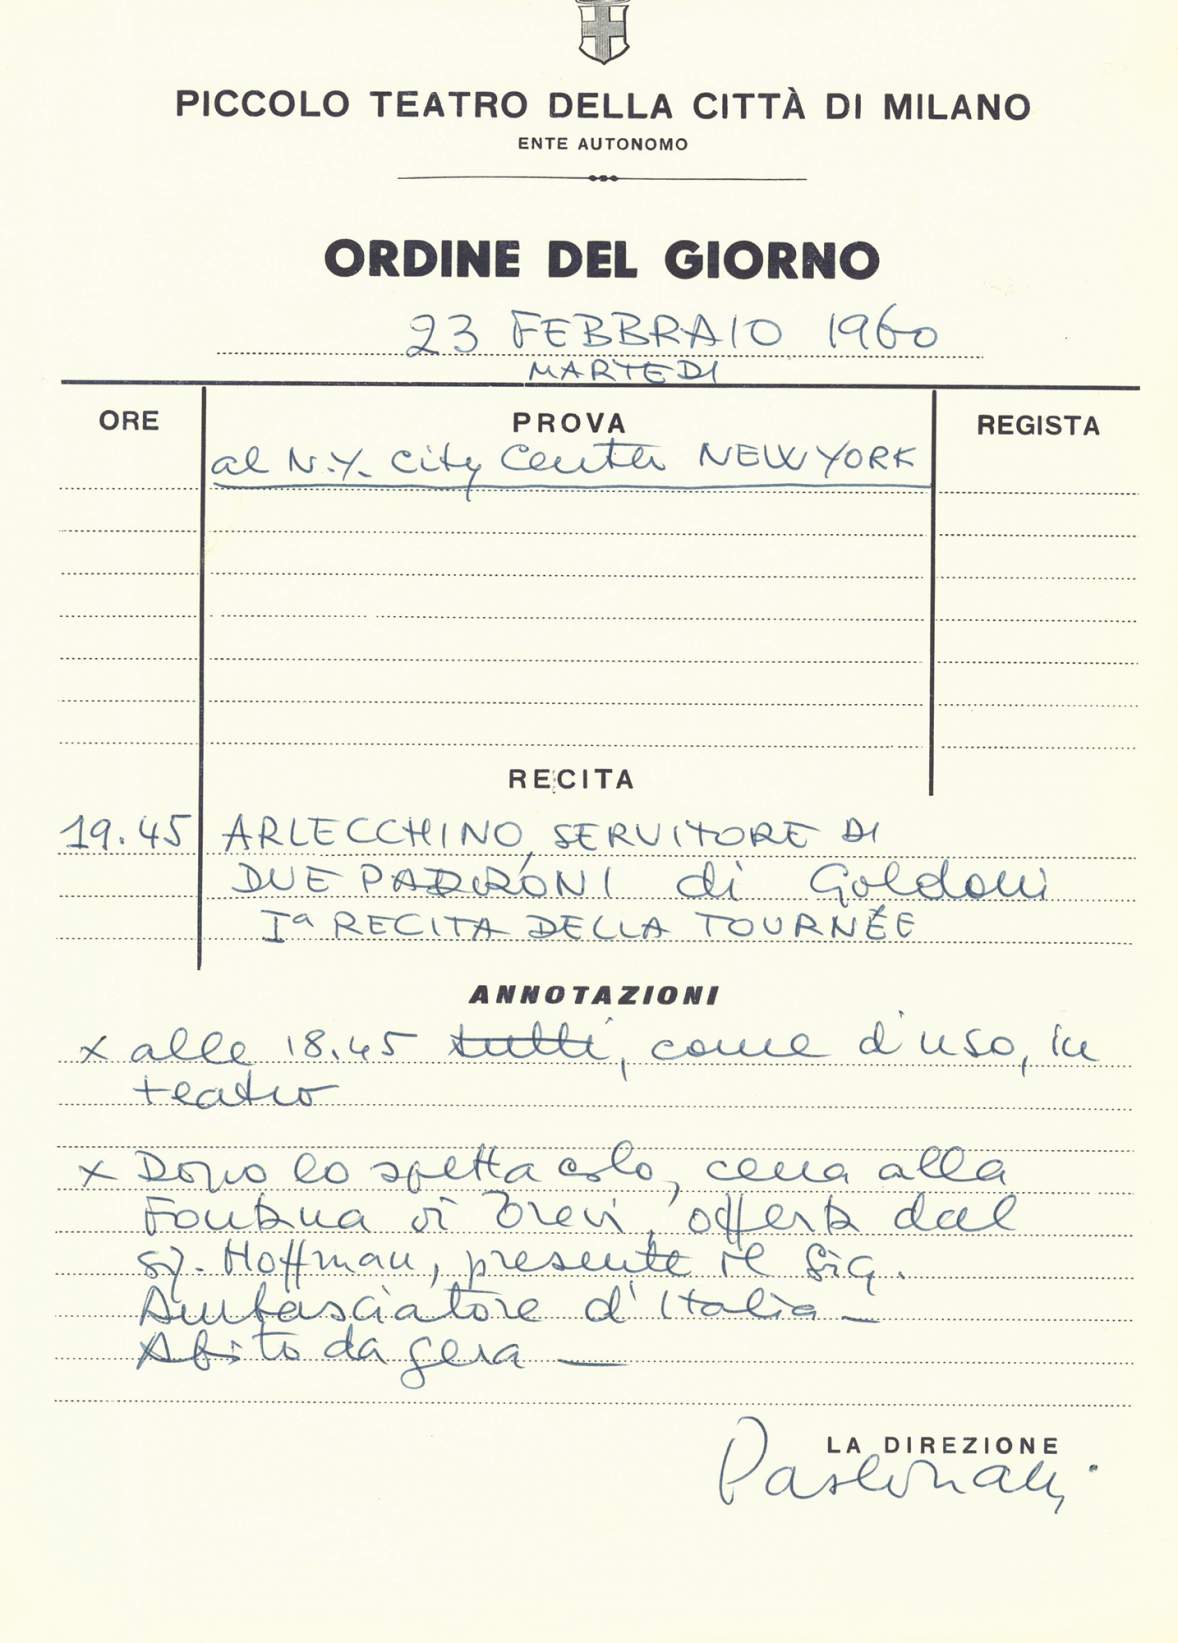 New York, 23 febbraio 1960: cena di gala con l’Ambasciatore - Archivio Piccolo Teatro di Milano